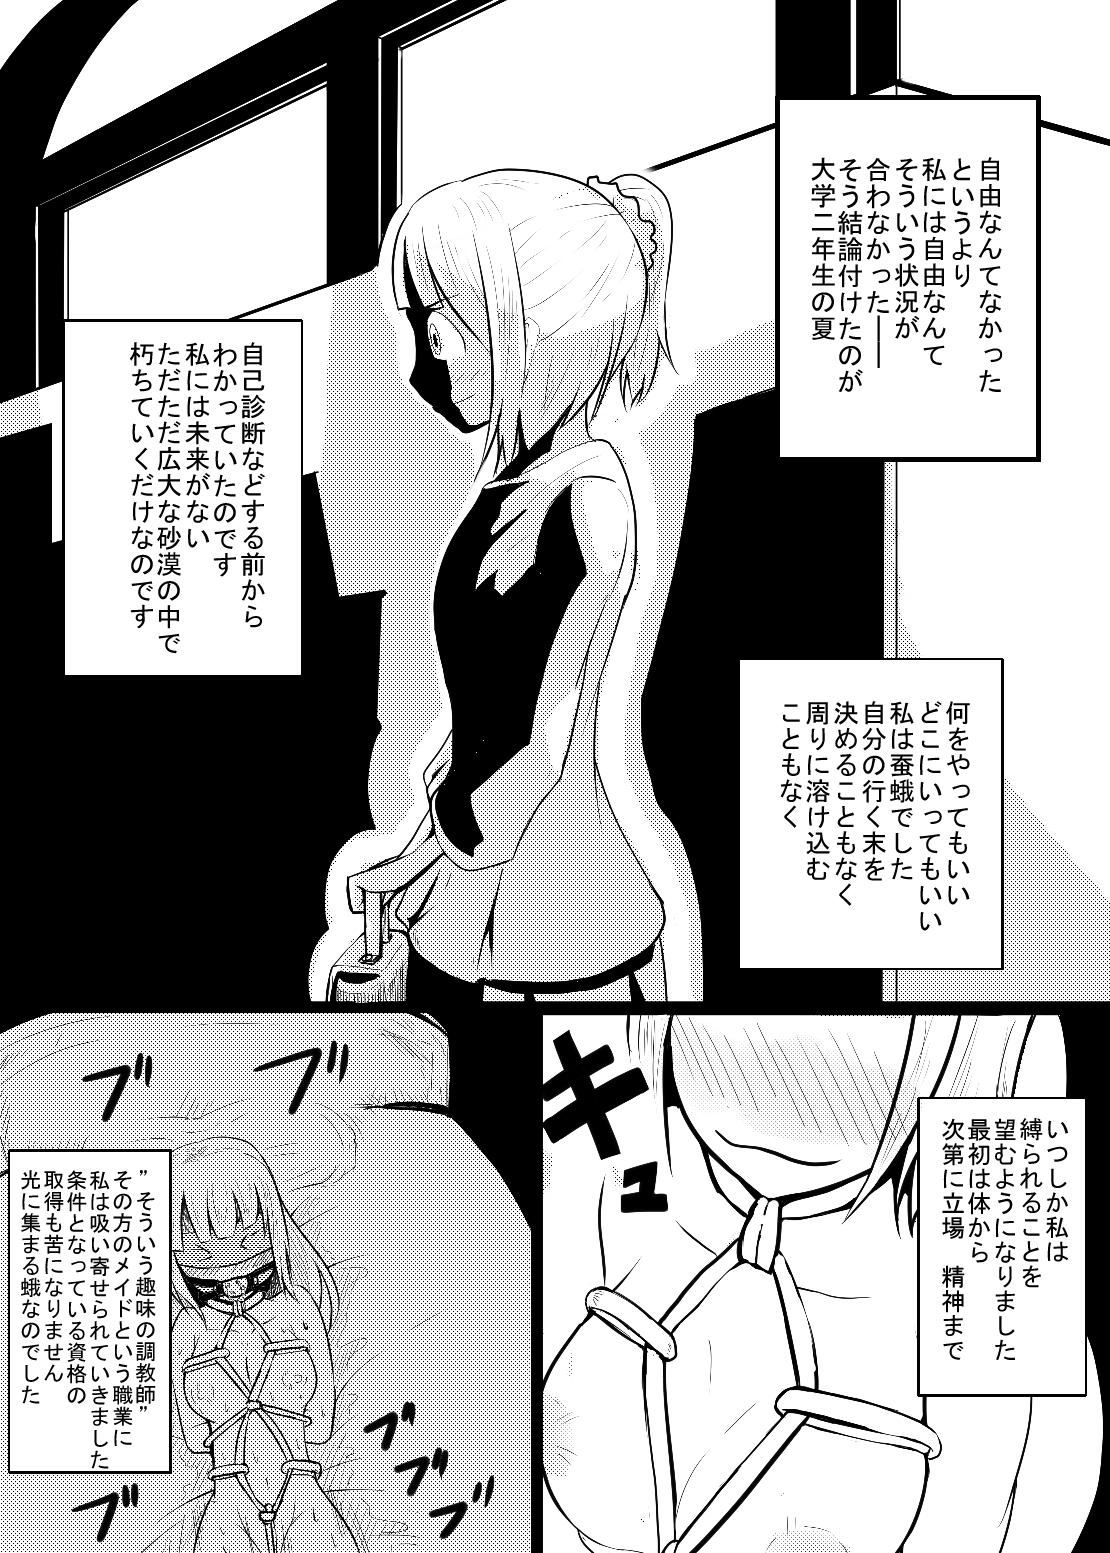 Shaven Maid-san no Chichi o Ookiku Shitari Shishi o Buttagiru dake no Manga Amazing - Page 3